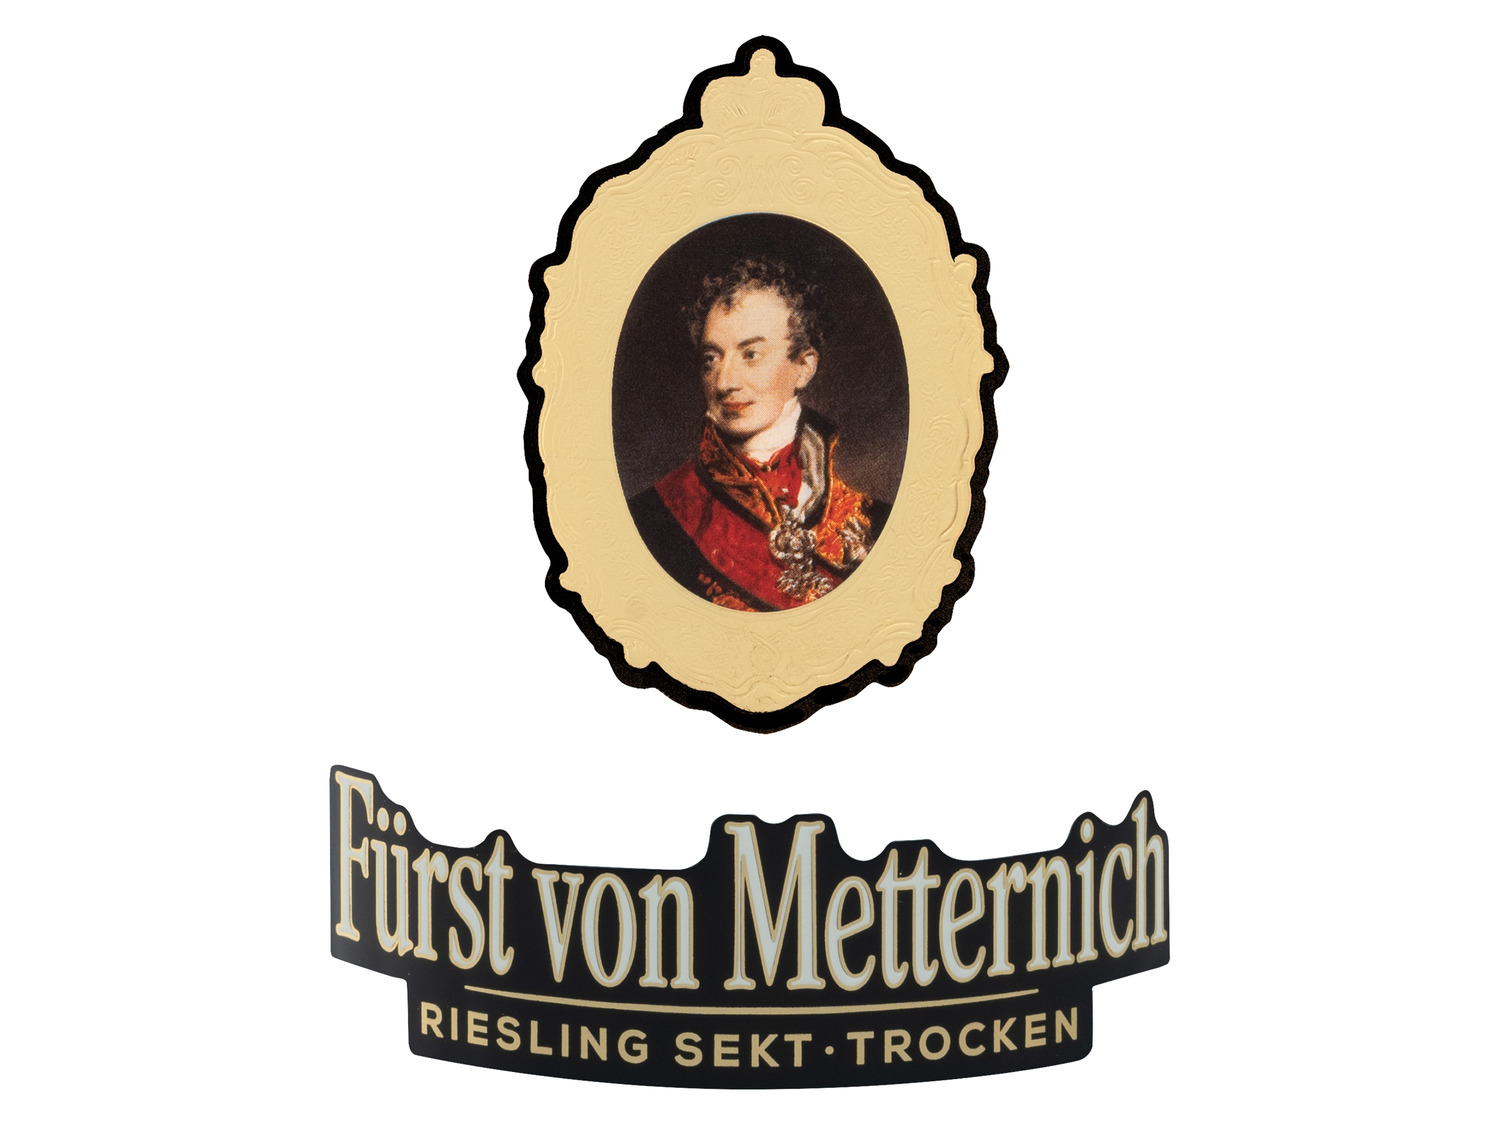 von … Sekt Metternich trocken, Fürst Riesling Deutscher